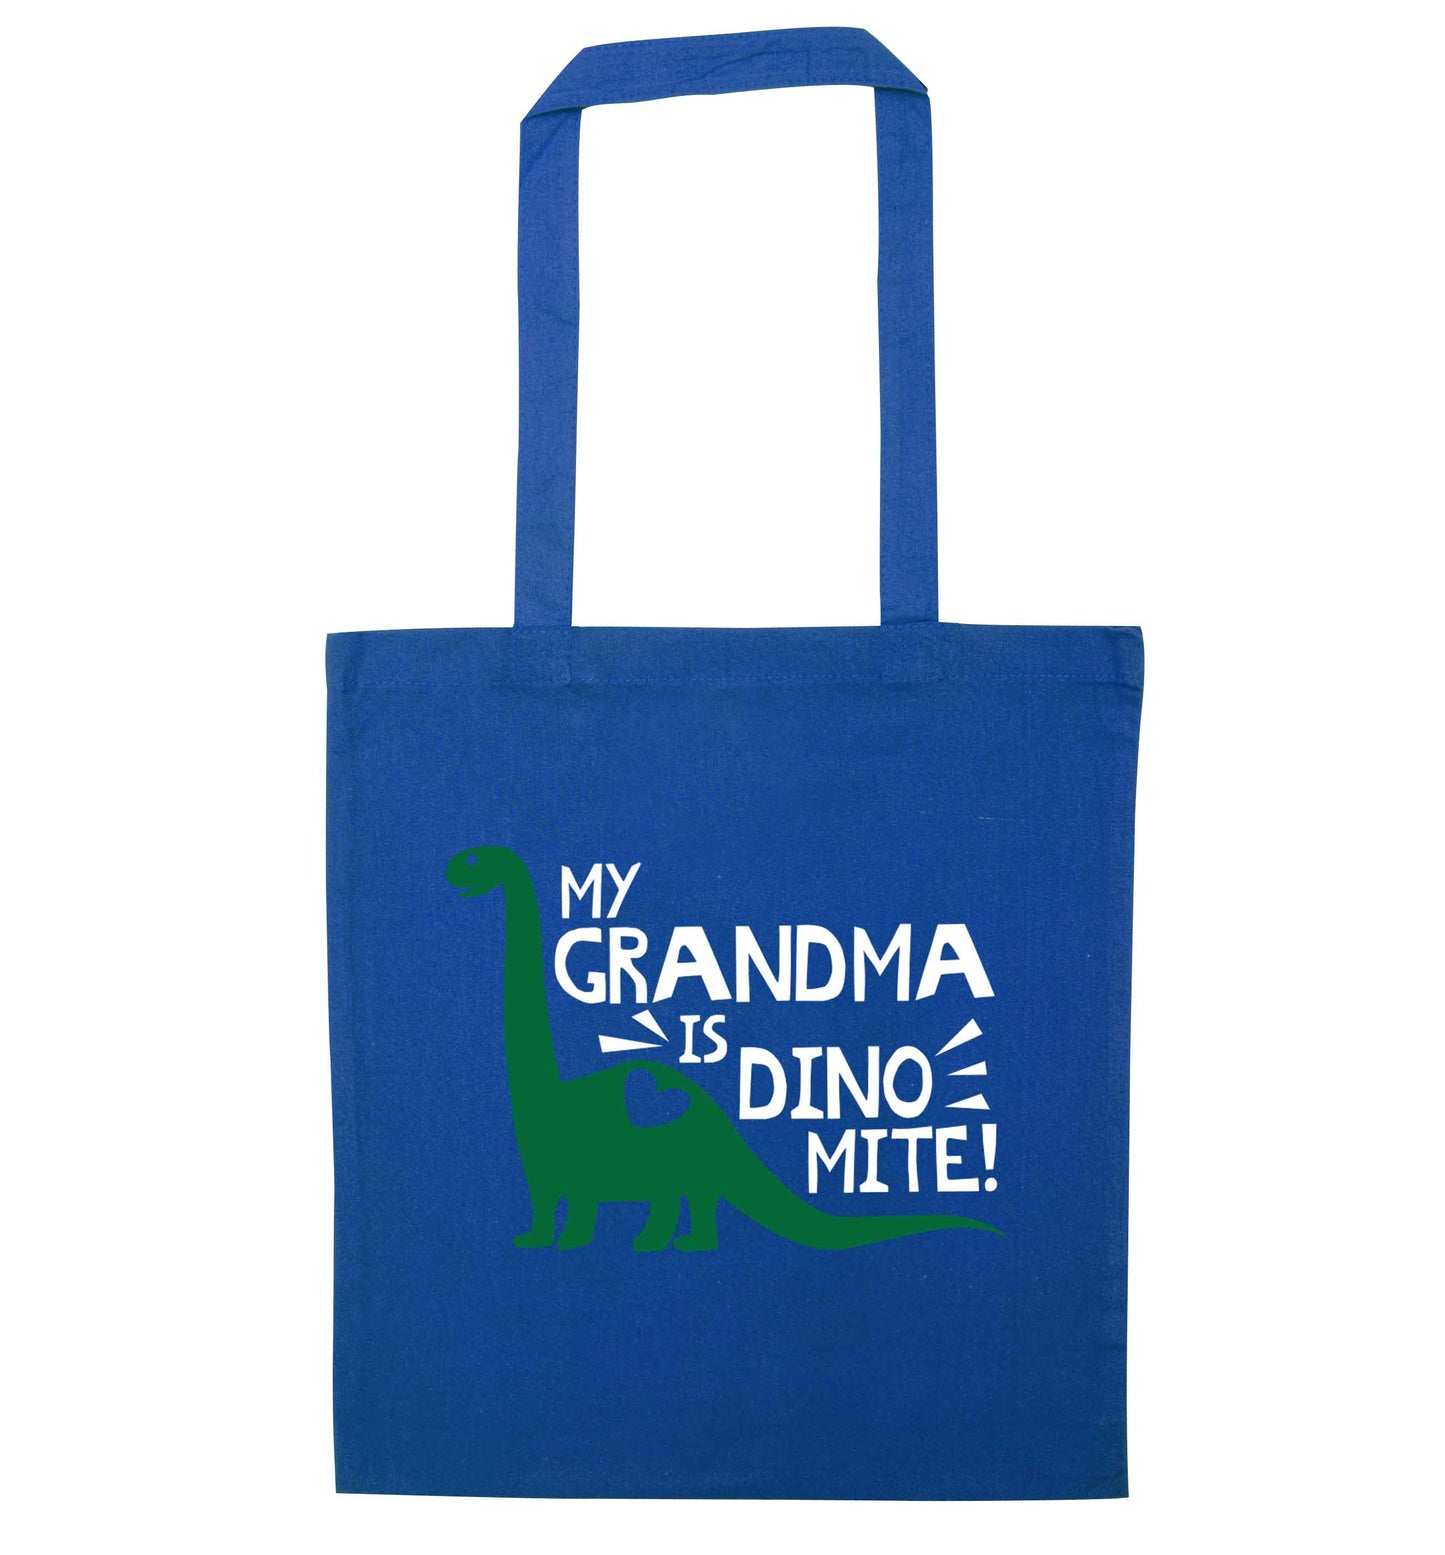 My grandma is dinomite! blue tote bag